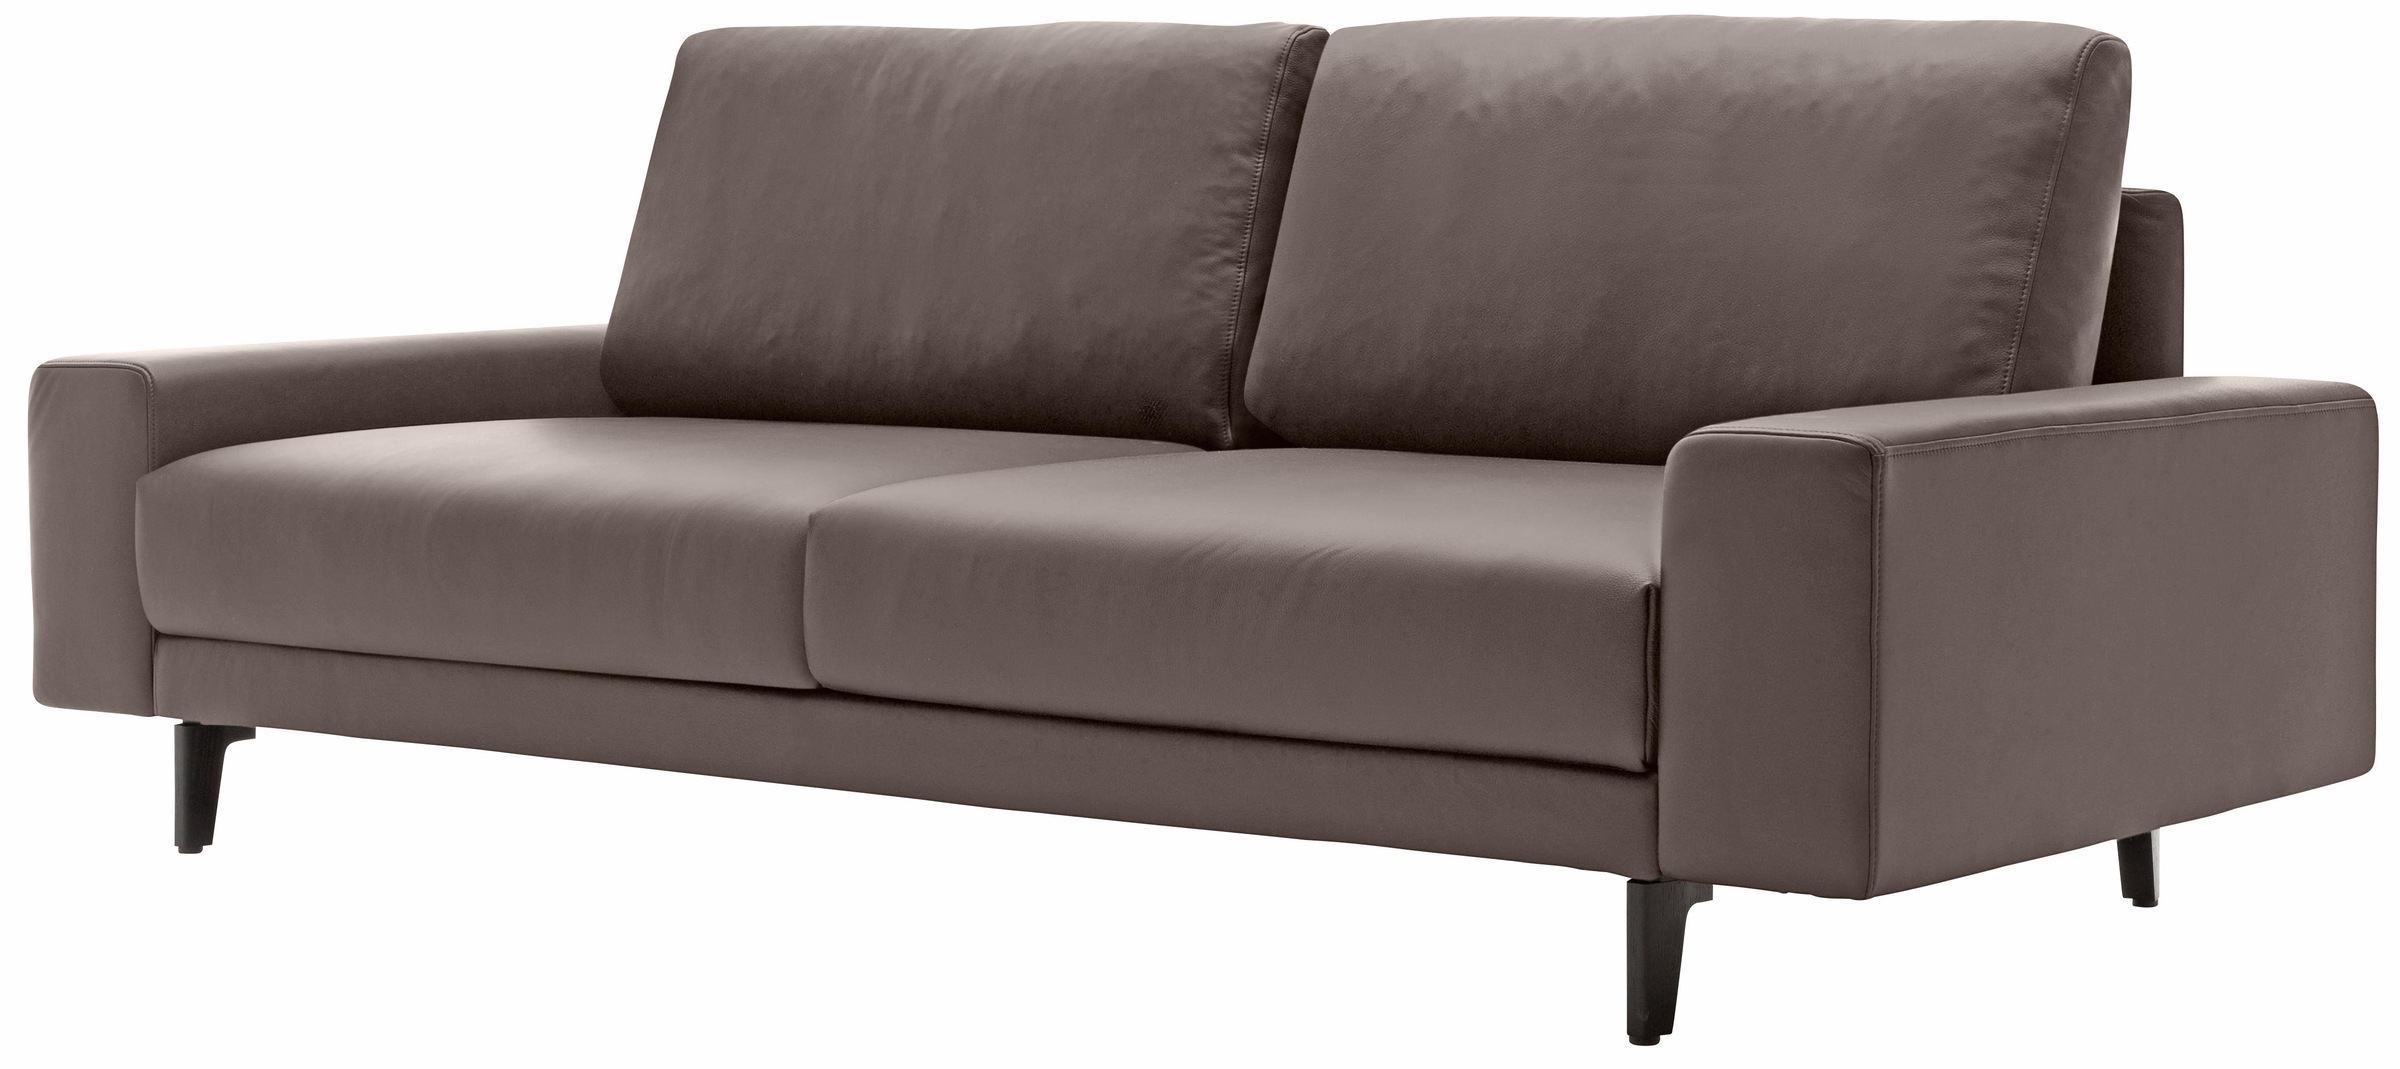 Alugussfüße Breite 2-Sitzer Armlehne 180 in cm »hs.450«, hülsta umbragrau, breit bequem niedrig, sofa bestellen